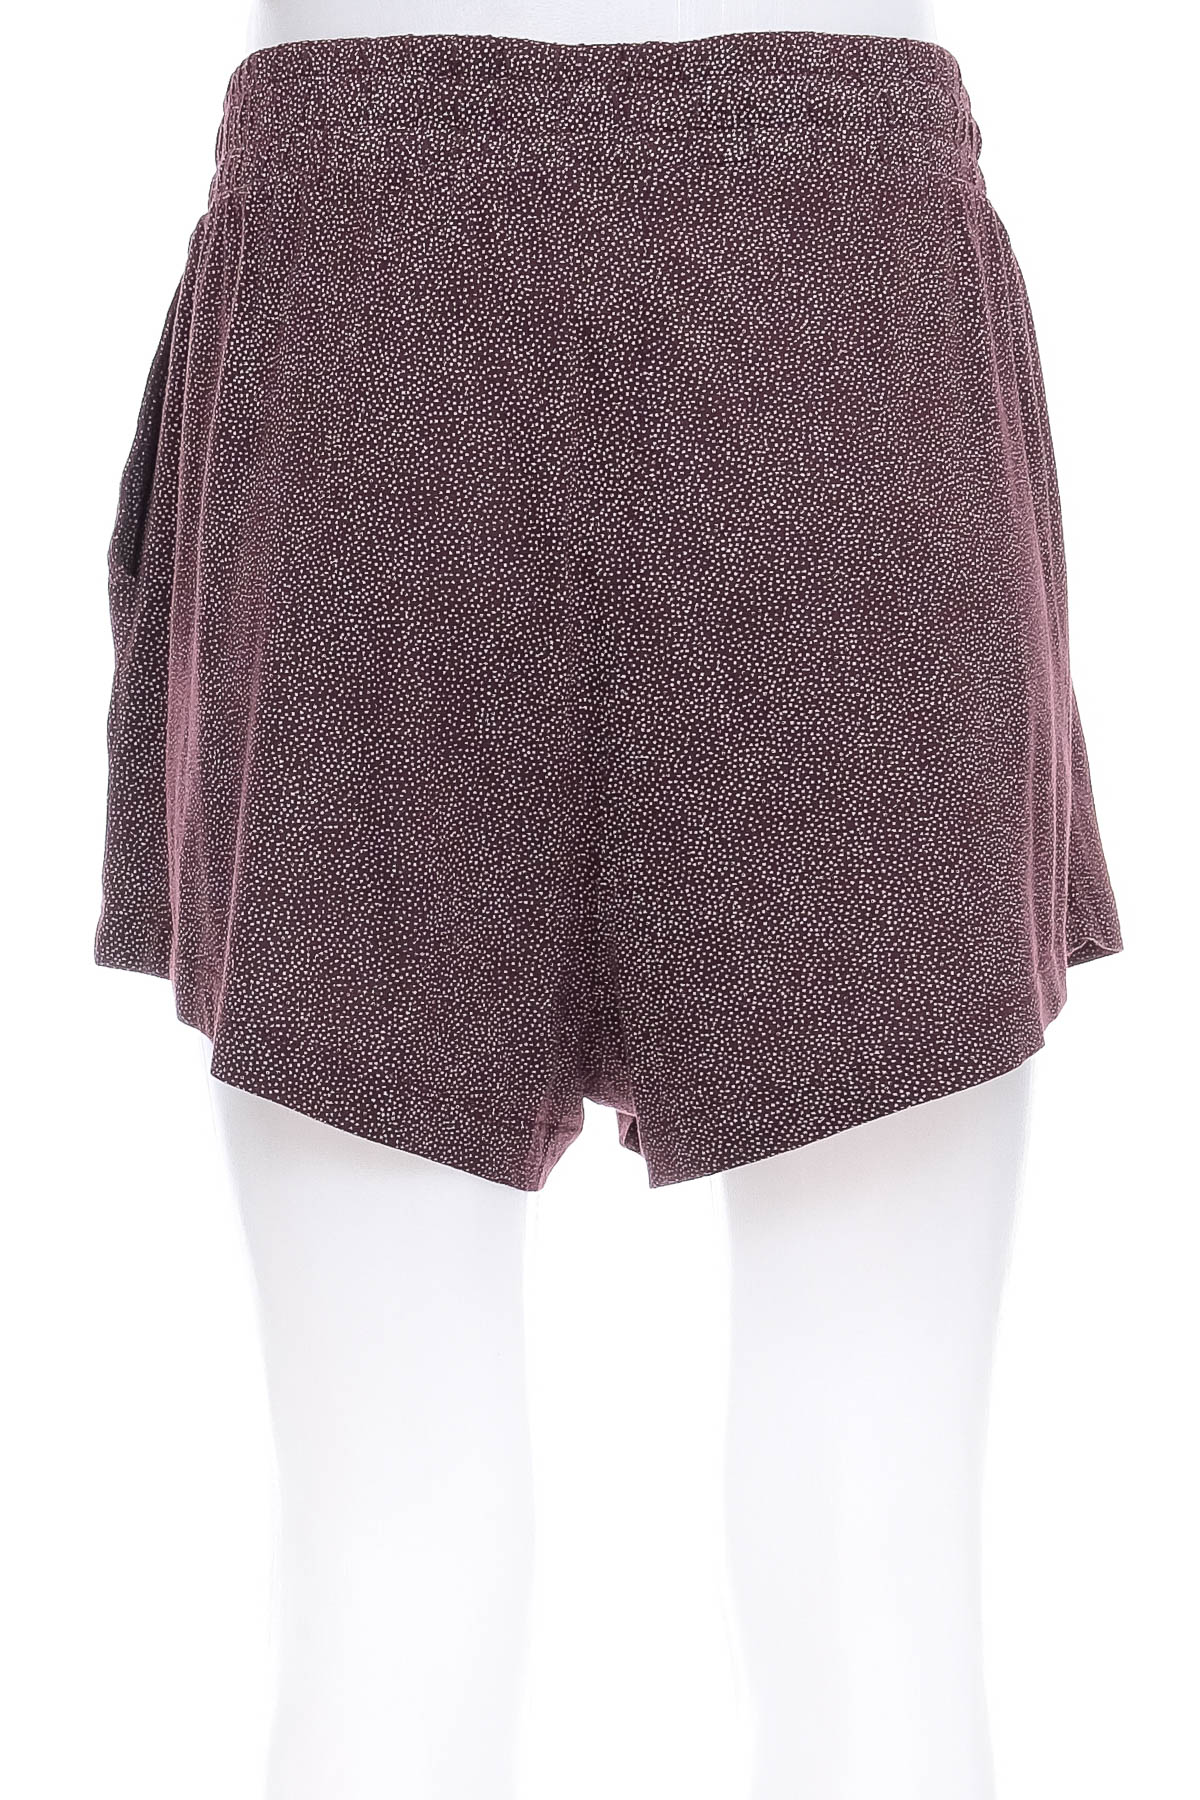 Female shorts - H&M Basic - 1